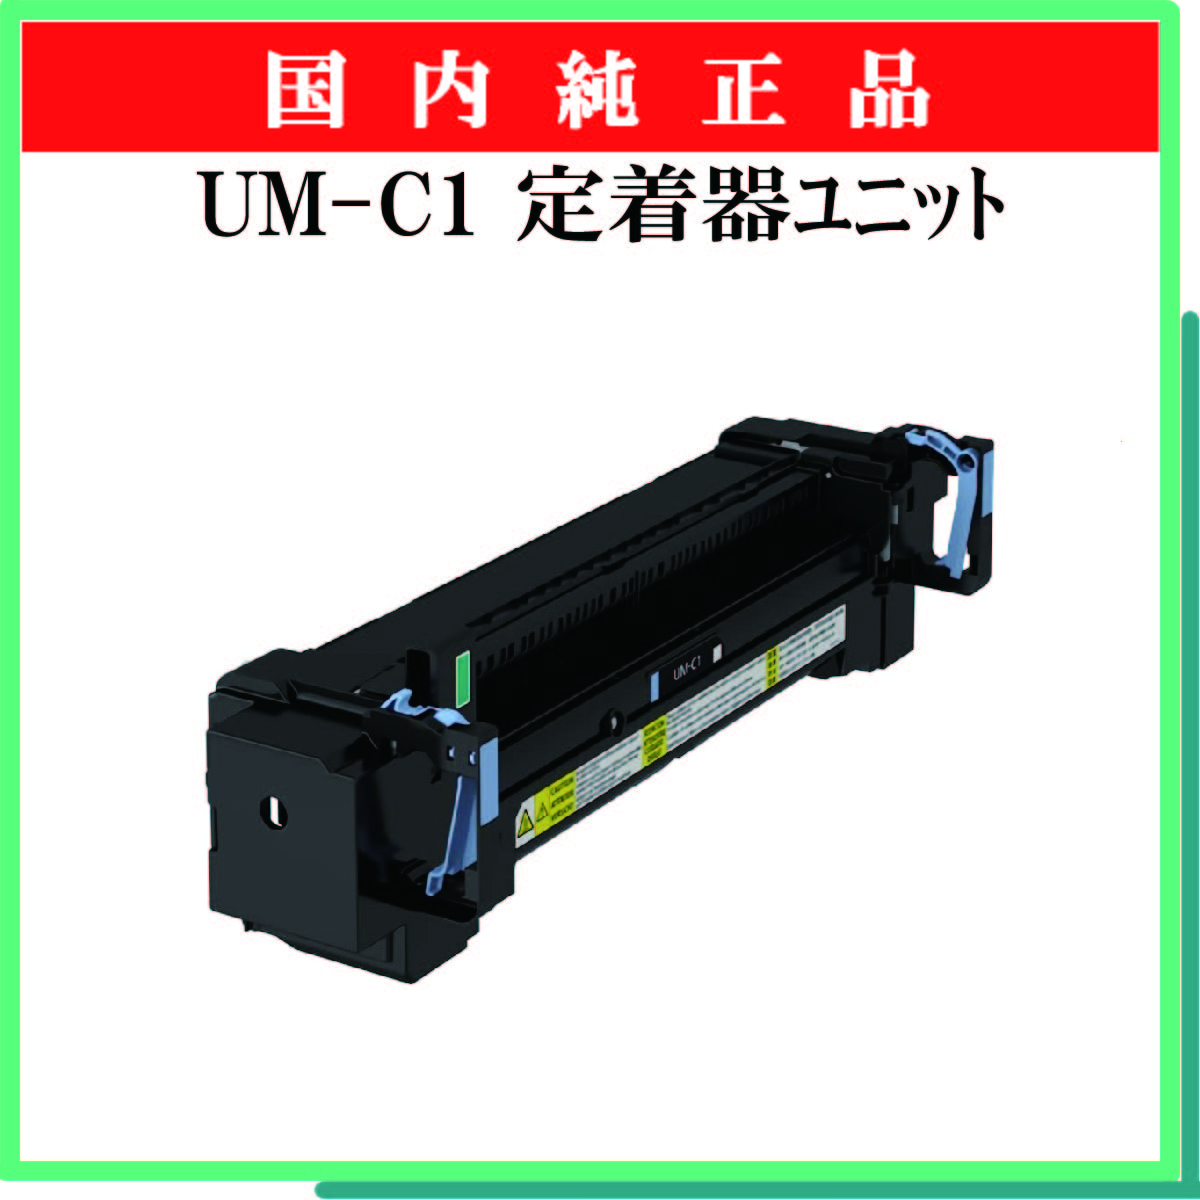 UM-C1 定着器ユニット 純正